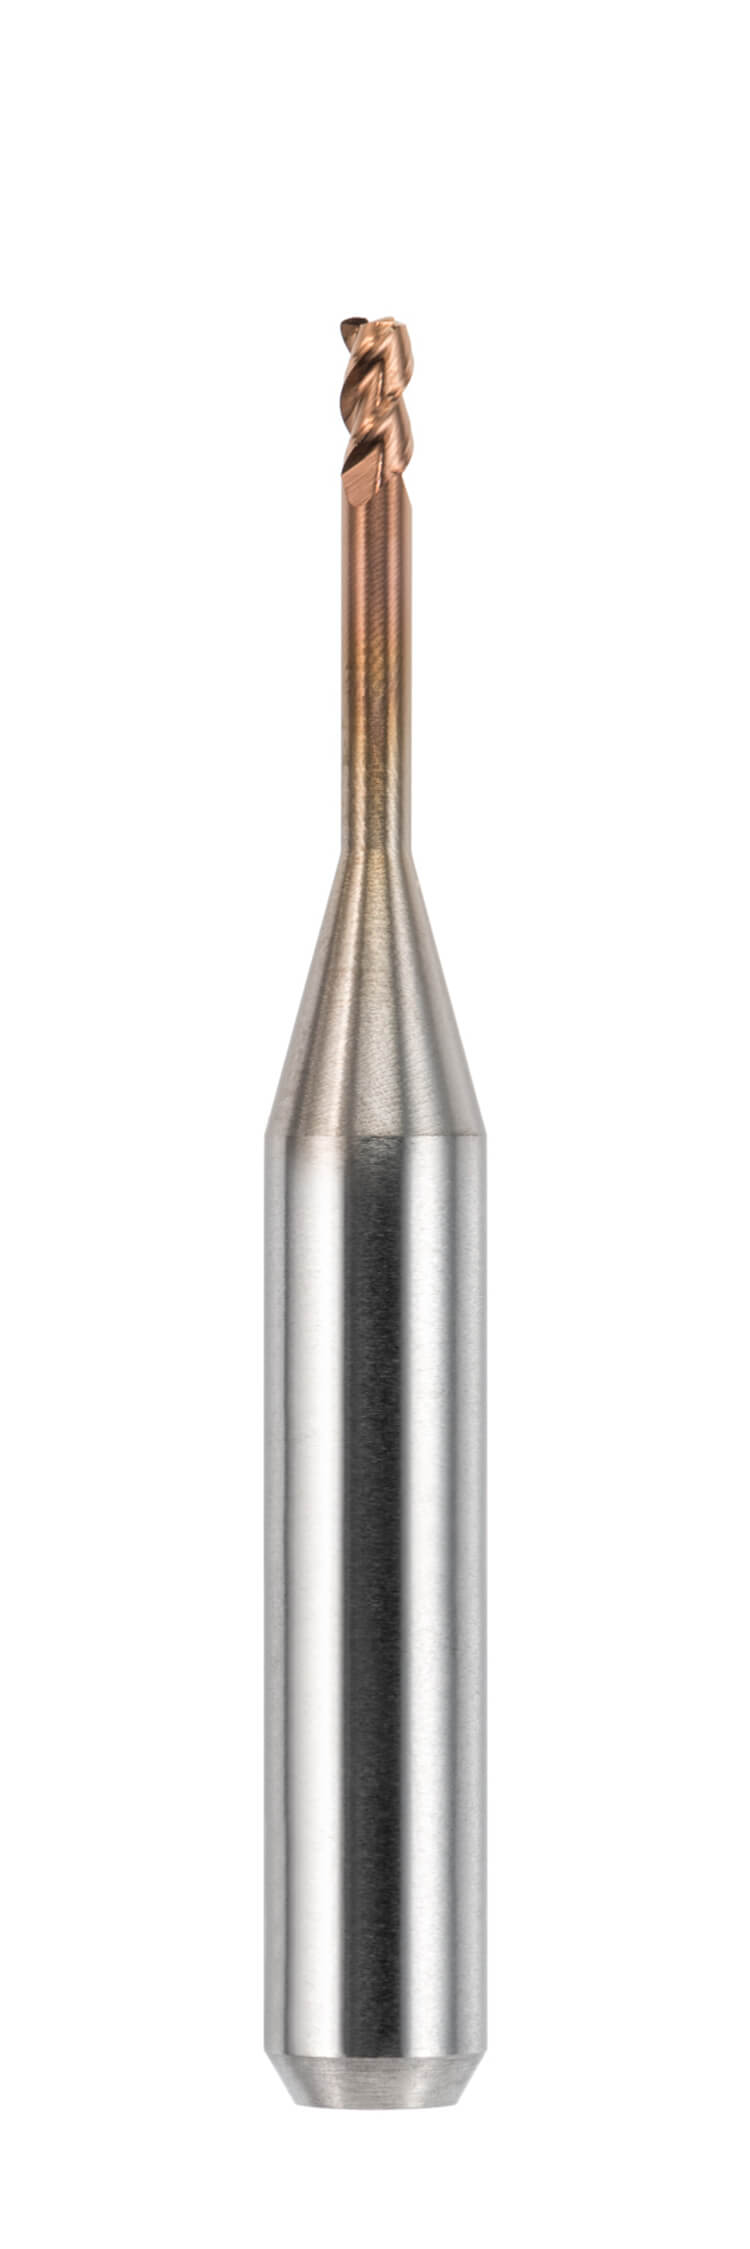 Offene Maschinensysteme 6,0 mm Schaft, Länge 48,0 mm Torusfräser, zylindrisch